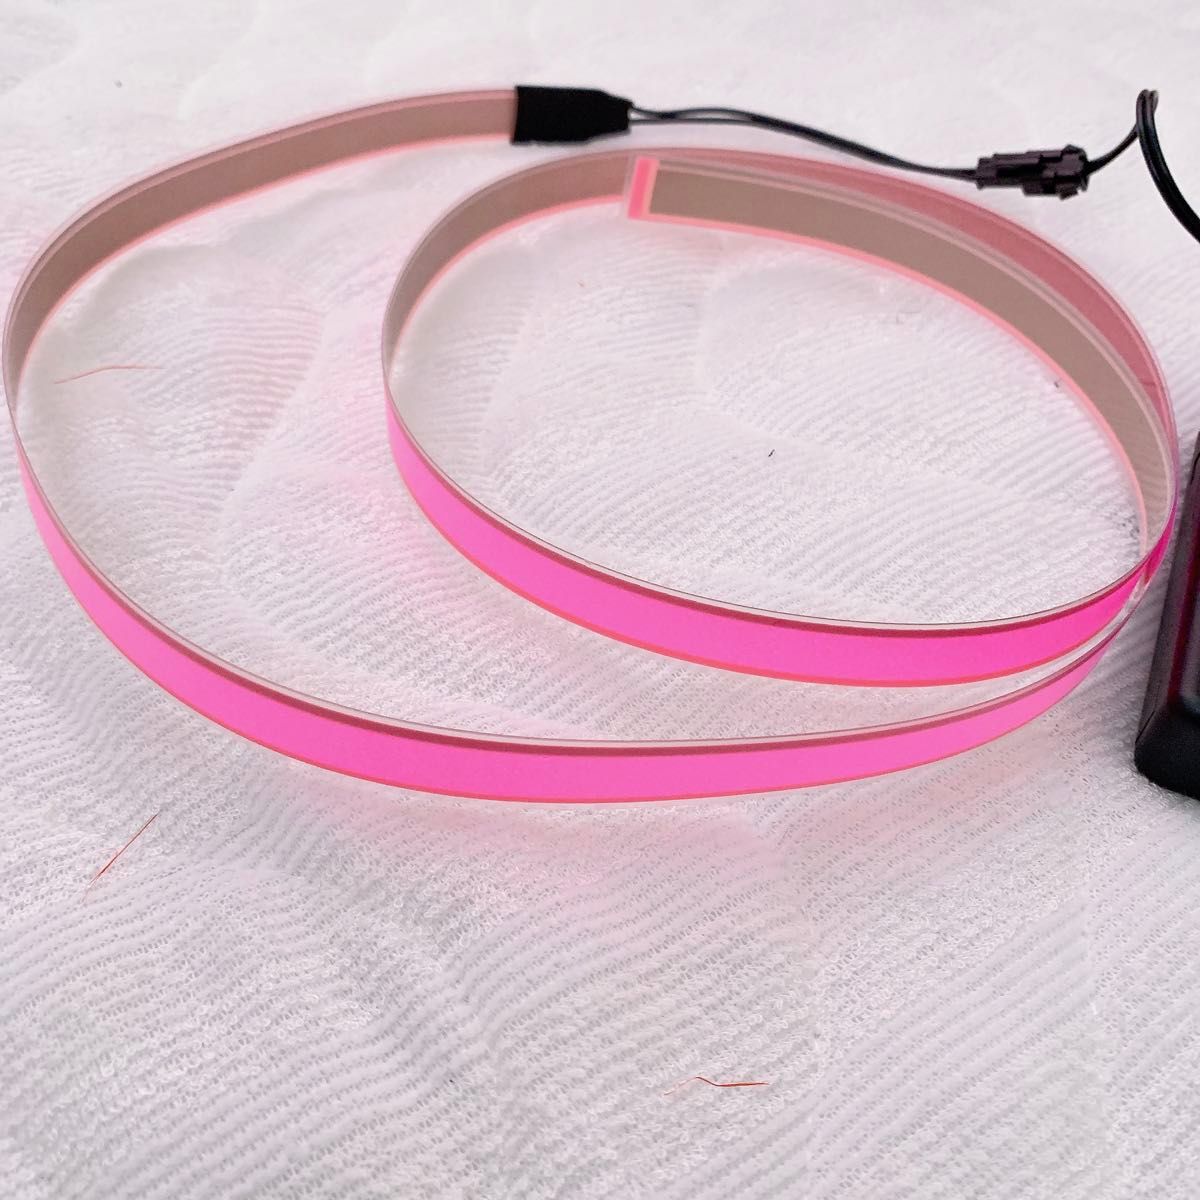 有機EL照明ライト 帯状 リボン型 ELテープ 1×100cm ピンク 極薄 EL 照明 テープタイプ リボンタイプ ピンク